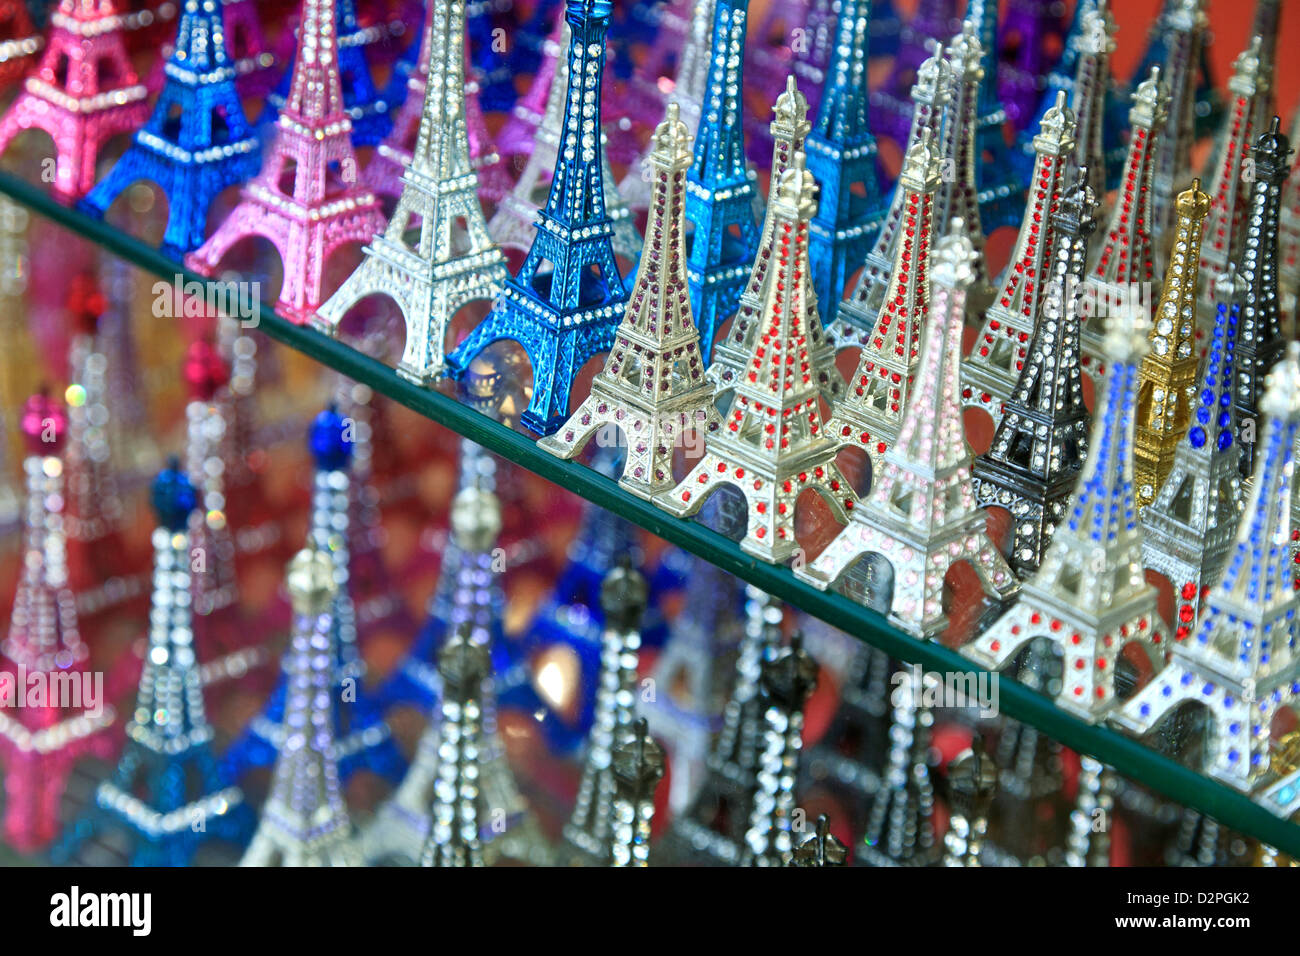 Miniature Eiffel Tower souvenirs, Paris, France Stock Photo